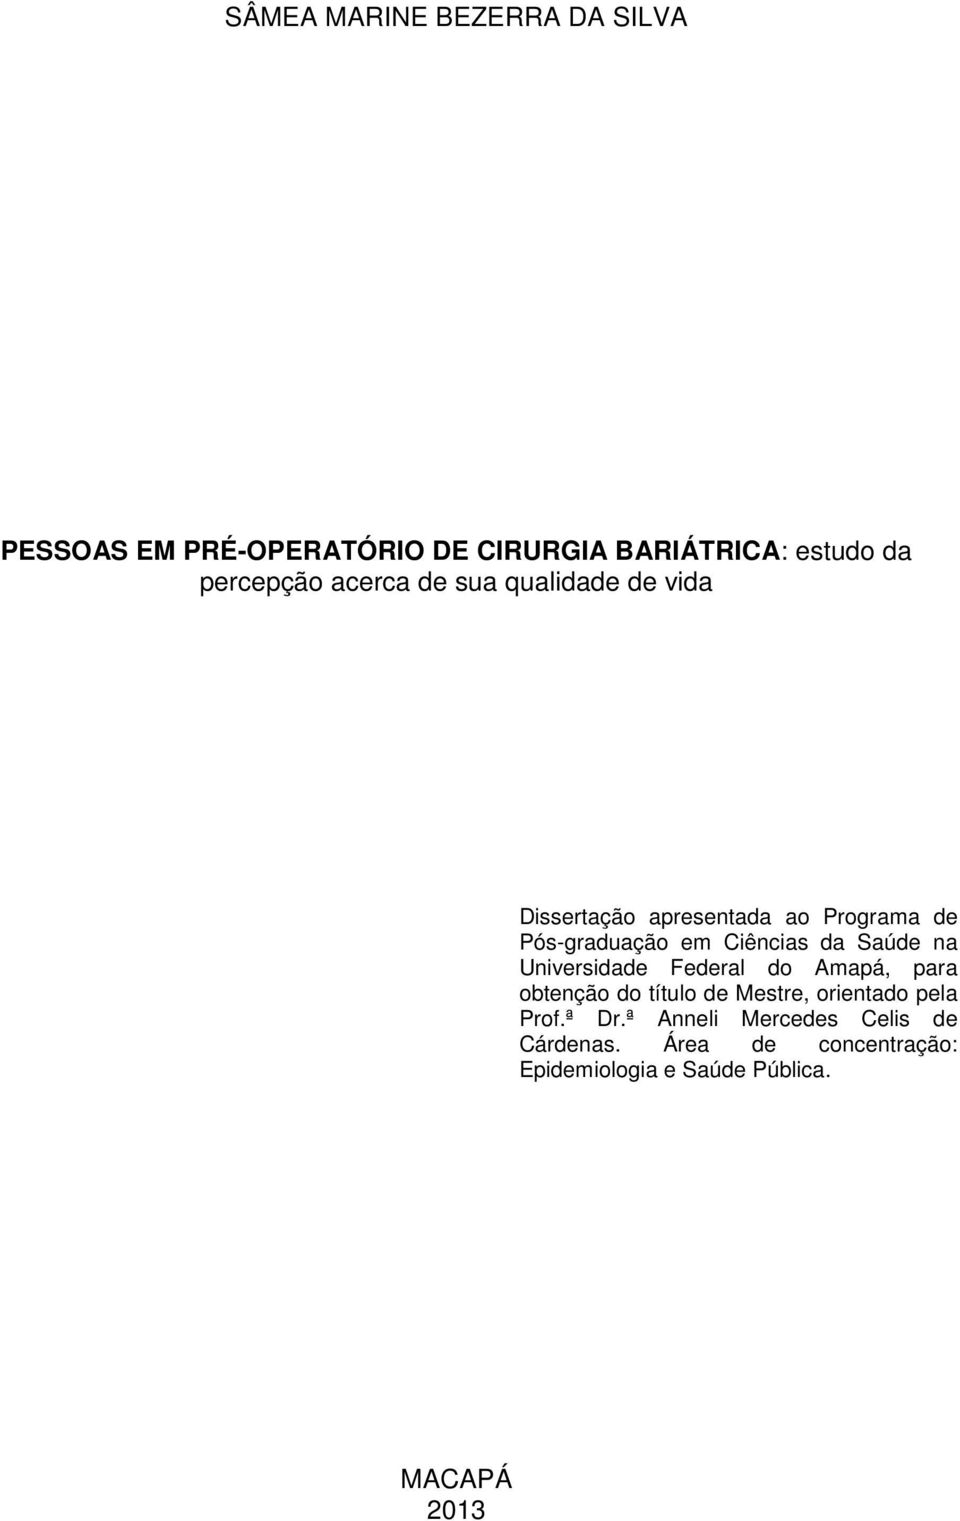 Saúde na Universidade Federal do Amapá, para obtenção do título de Mestre, orientado pela Prof.ª Dr.